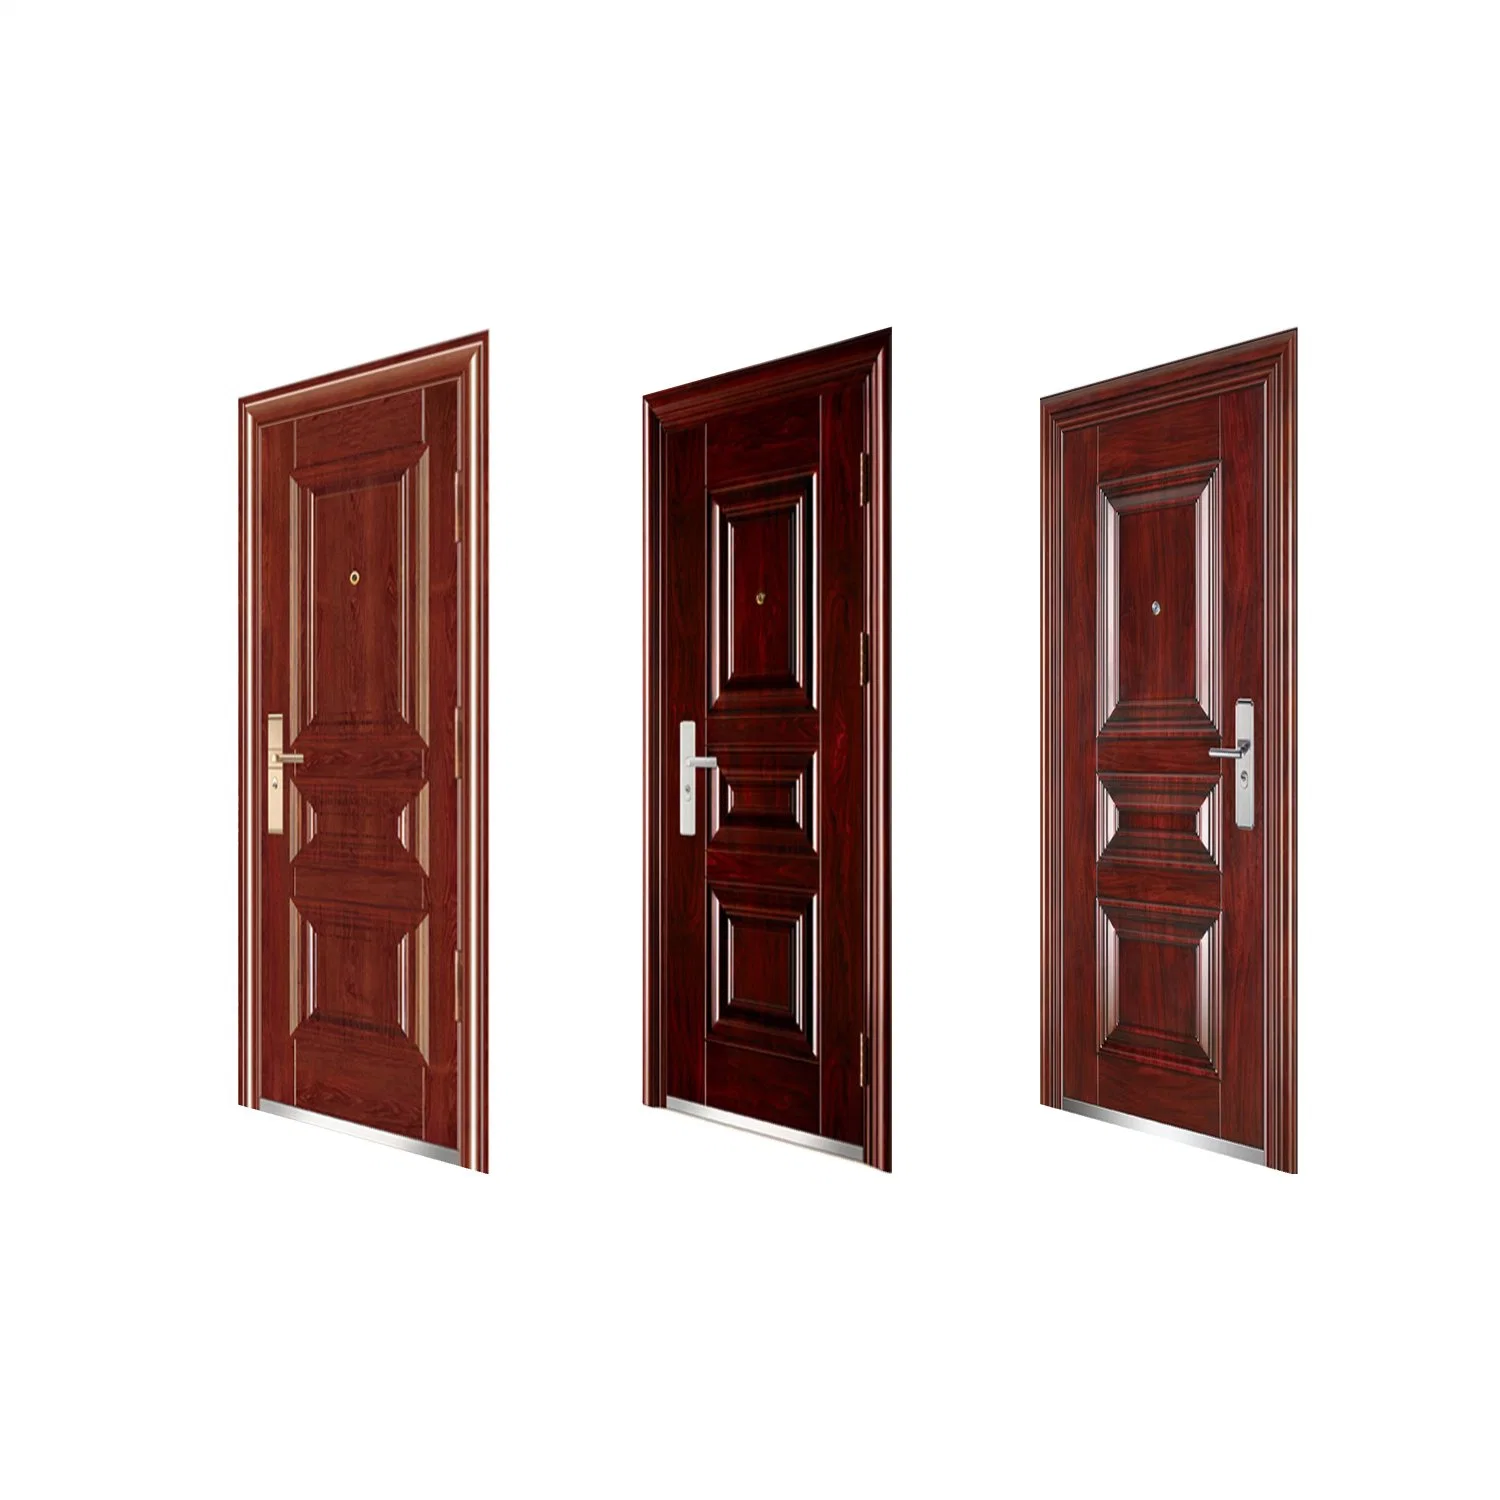 Original Sources 10cm Main Door Designs Security Doors Anti-Theft Home Interior Room Hotel Flush Factory Custom Steel Door